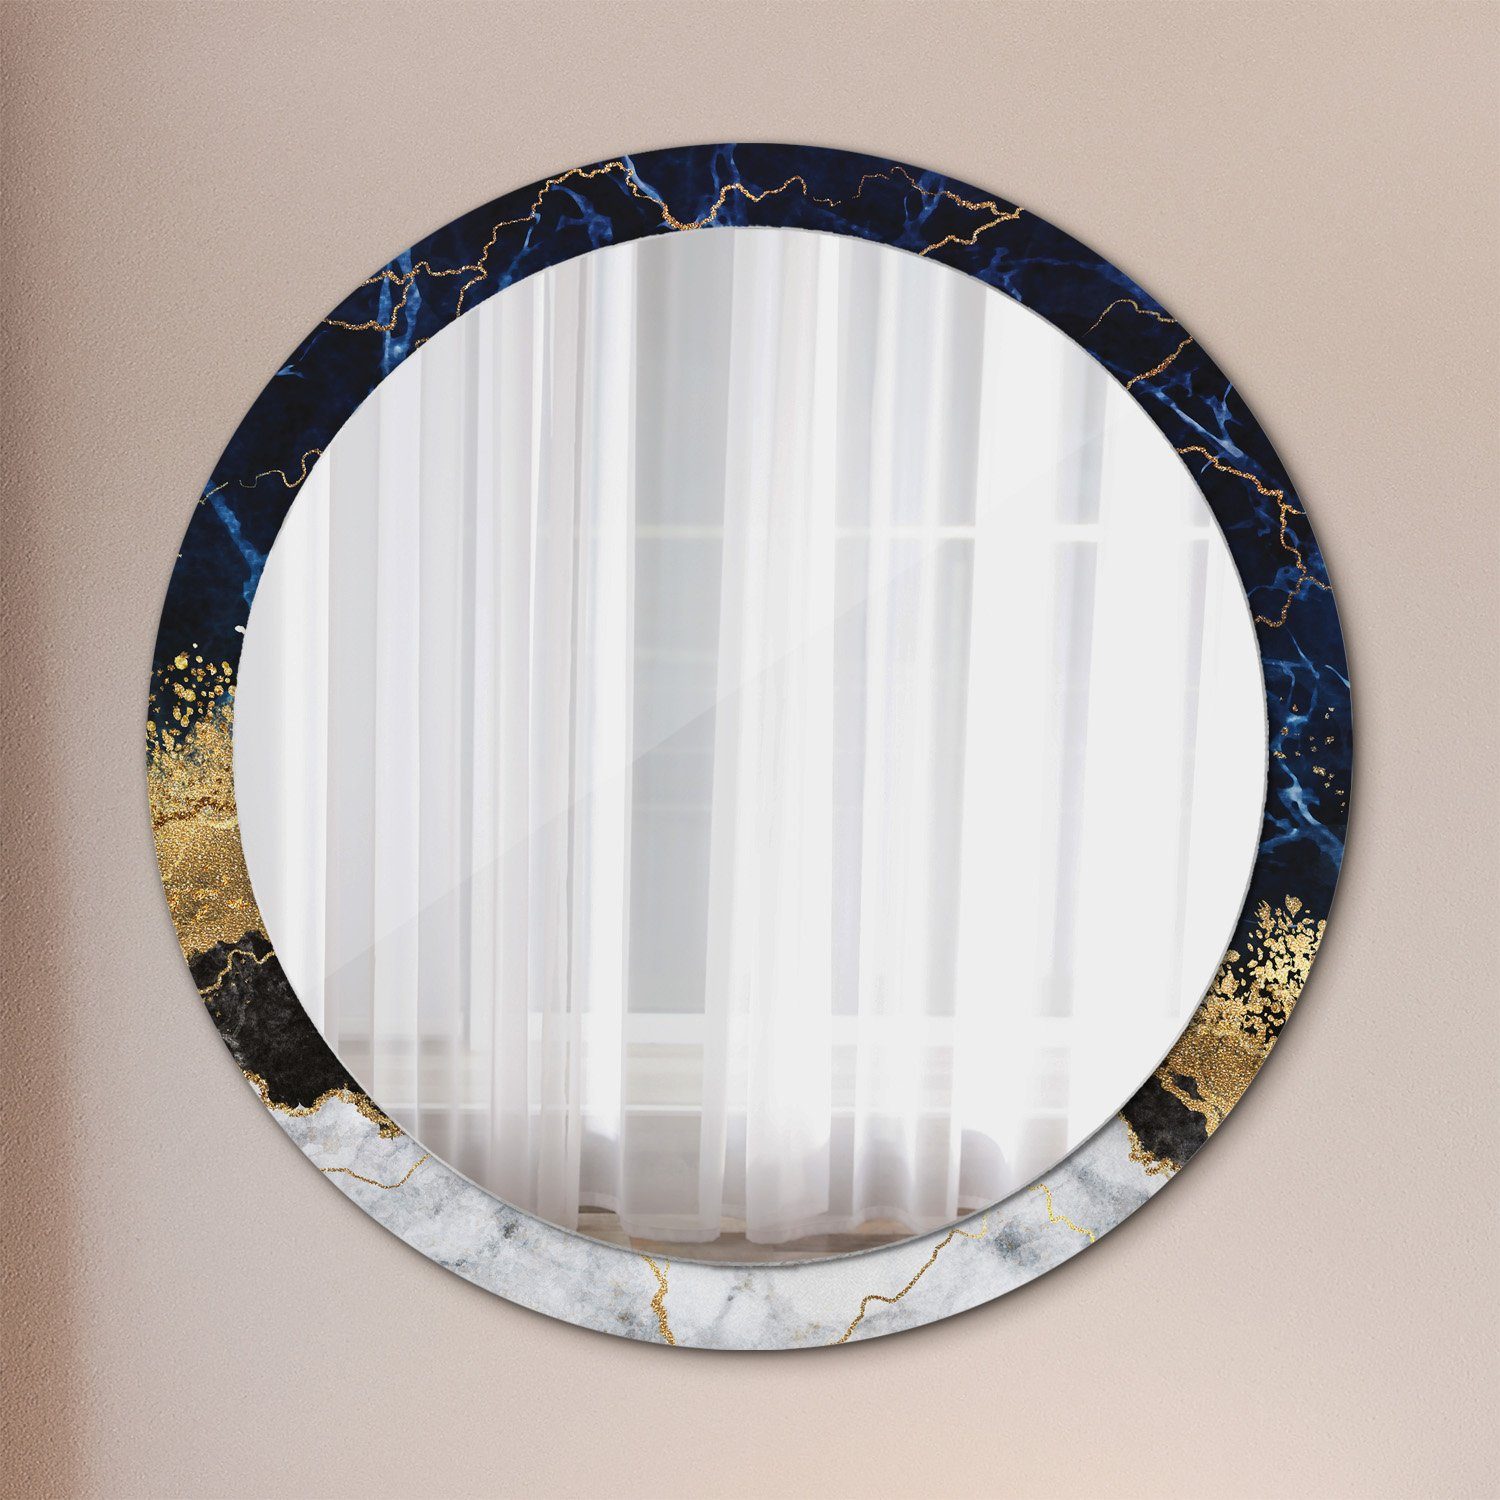 Tulup Wandspiegel Runder Deko Modernem Spiegel Rund: Aufdruck Modernem Rundspiegel Ø100cm, Aufdruck Marmor Runder mit mit Spiegel Blau